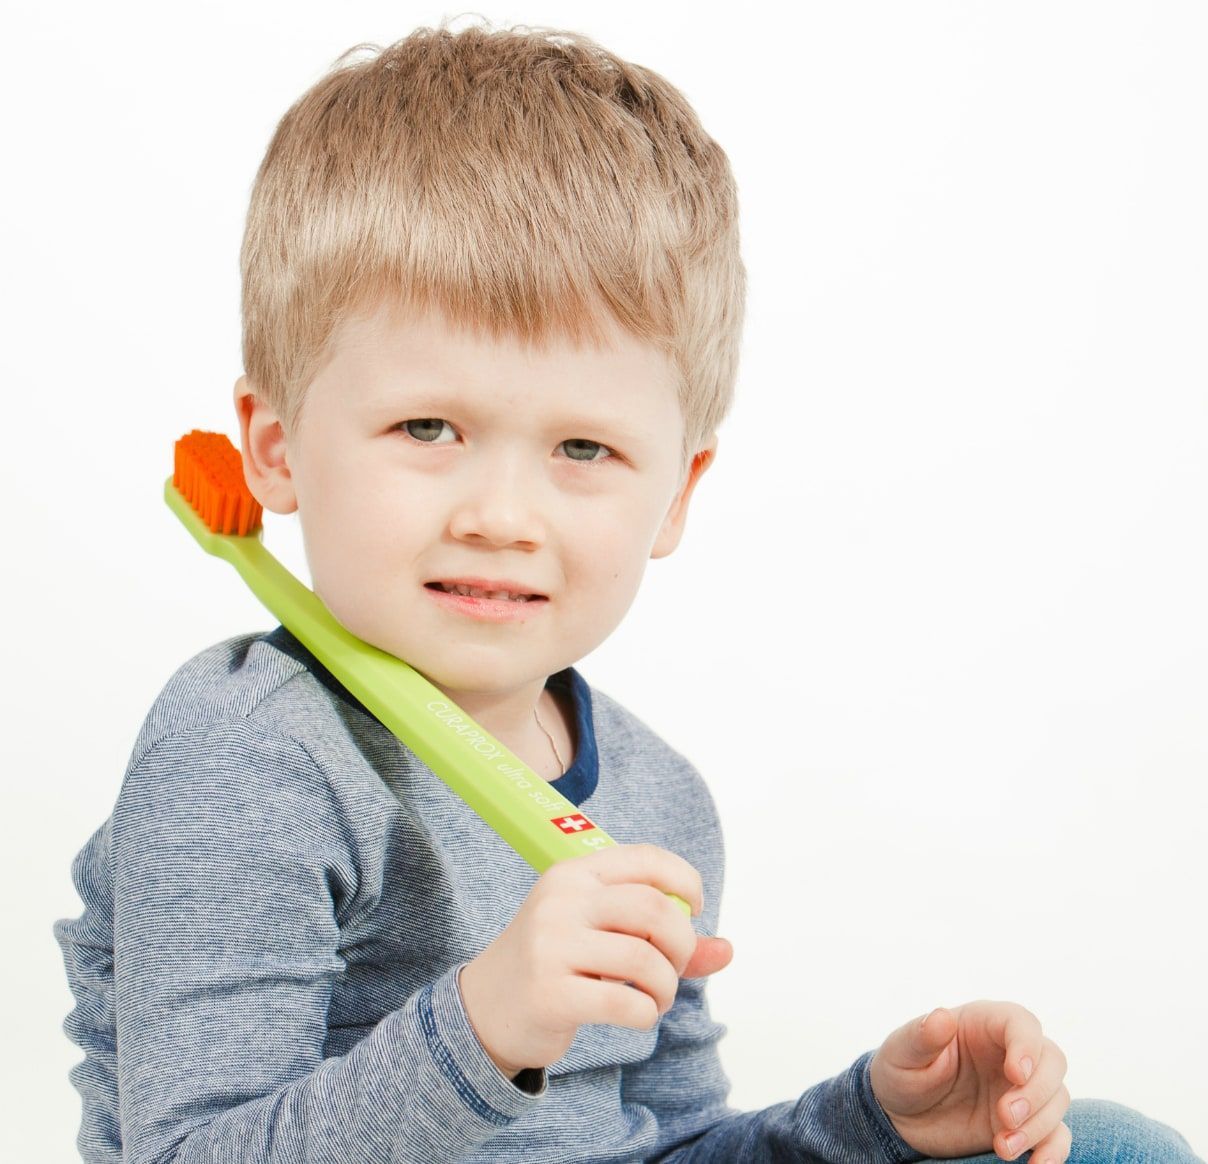 Вы знали, что существует налет, который невозможно убрать зубной щеткой?